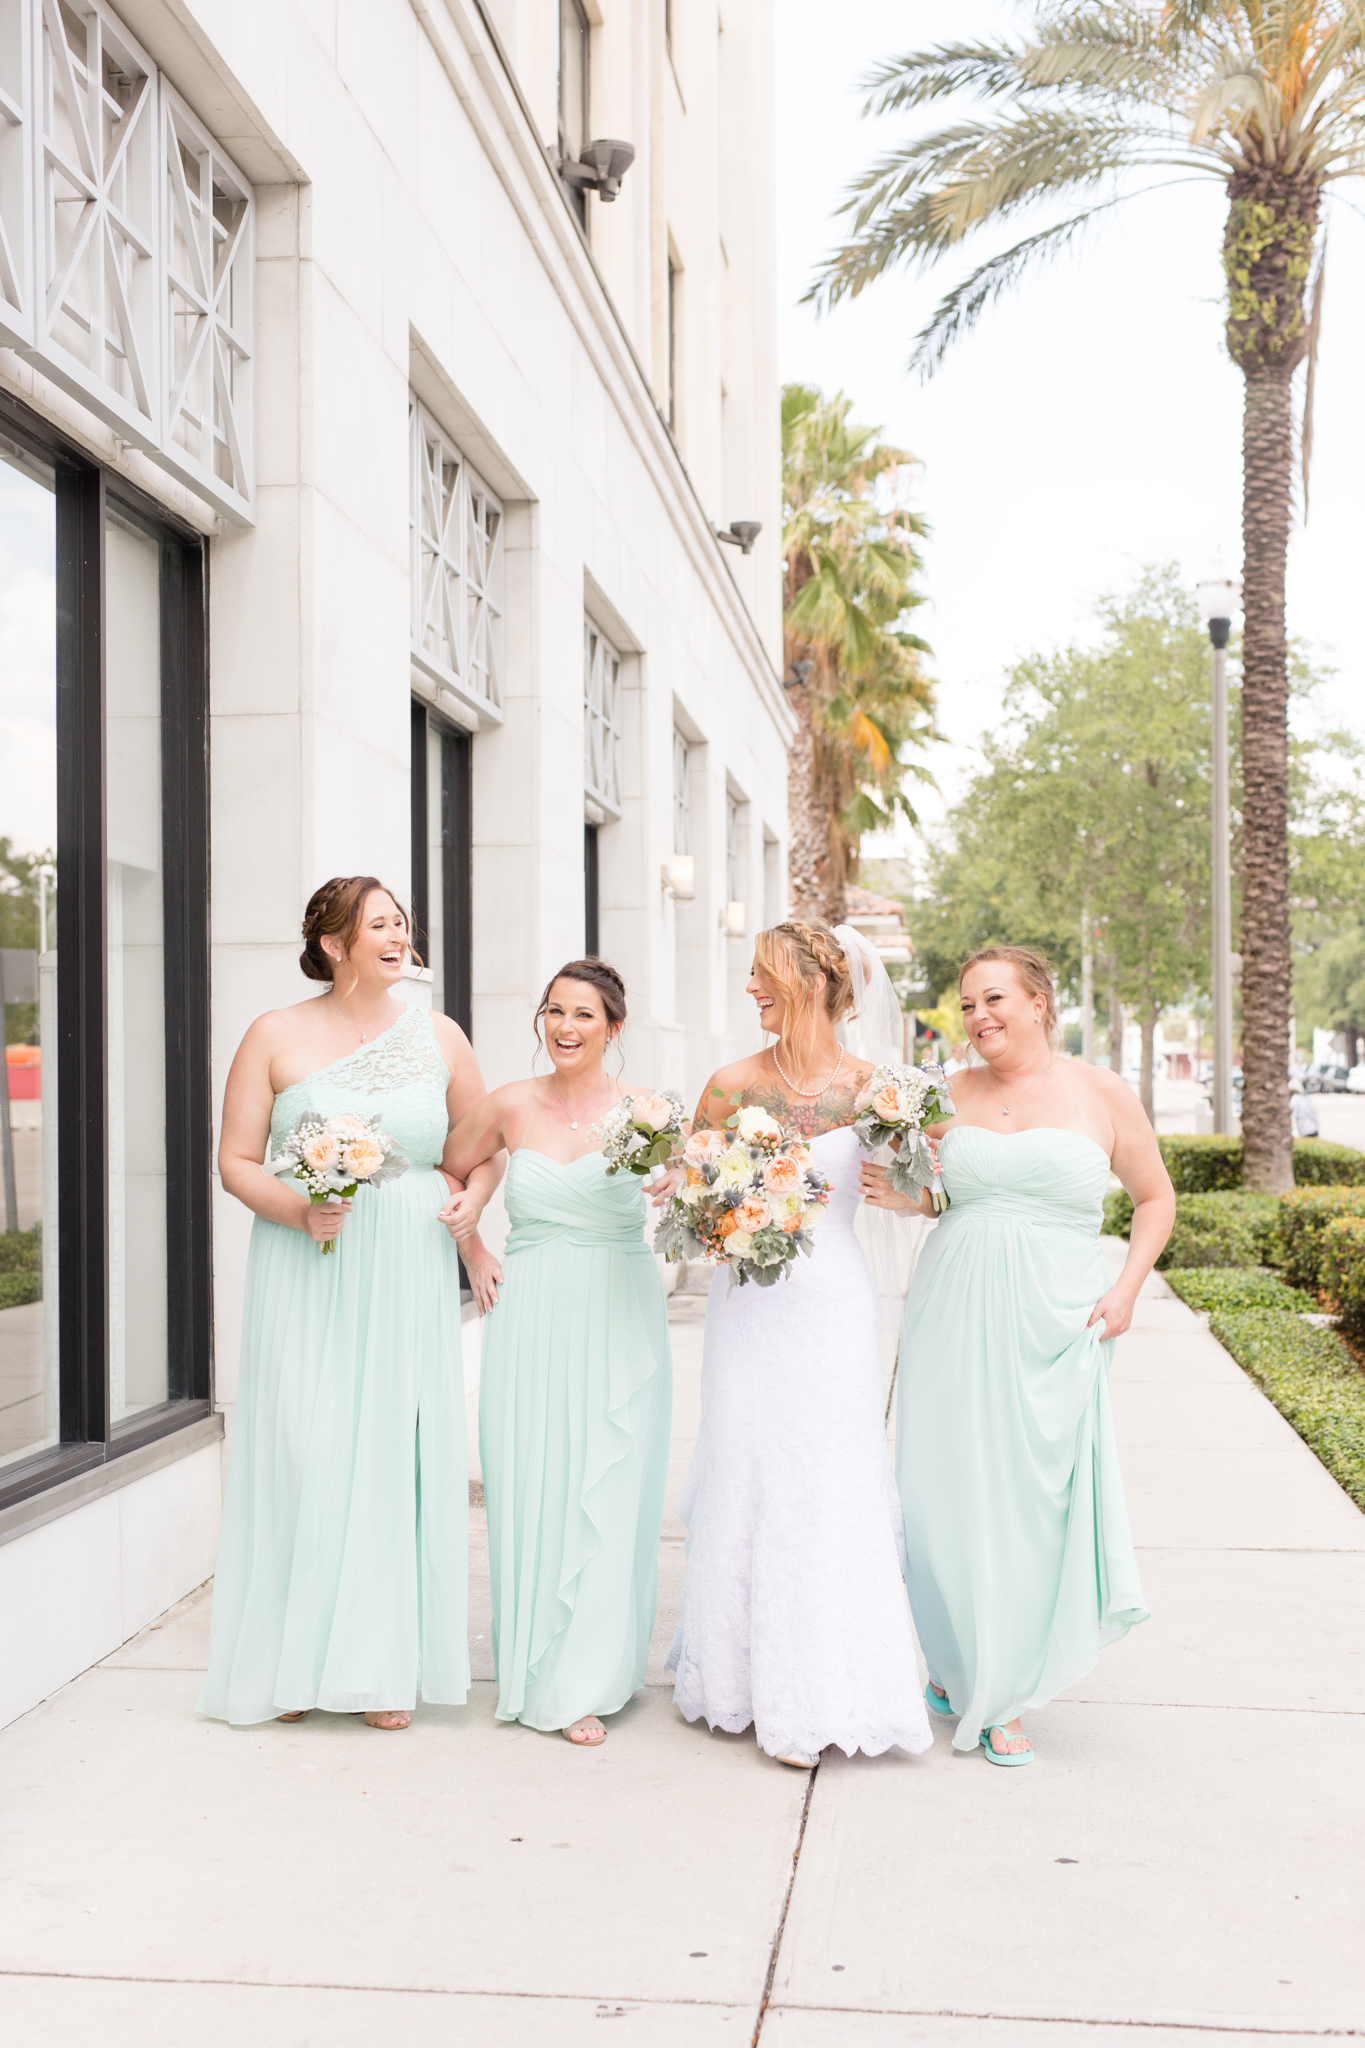 Bridal party walks down St. Petersburg sidewalk.